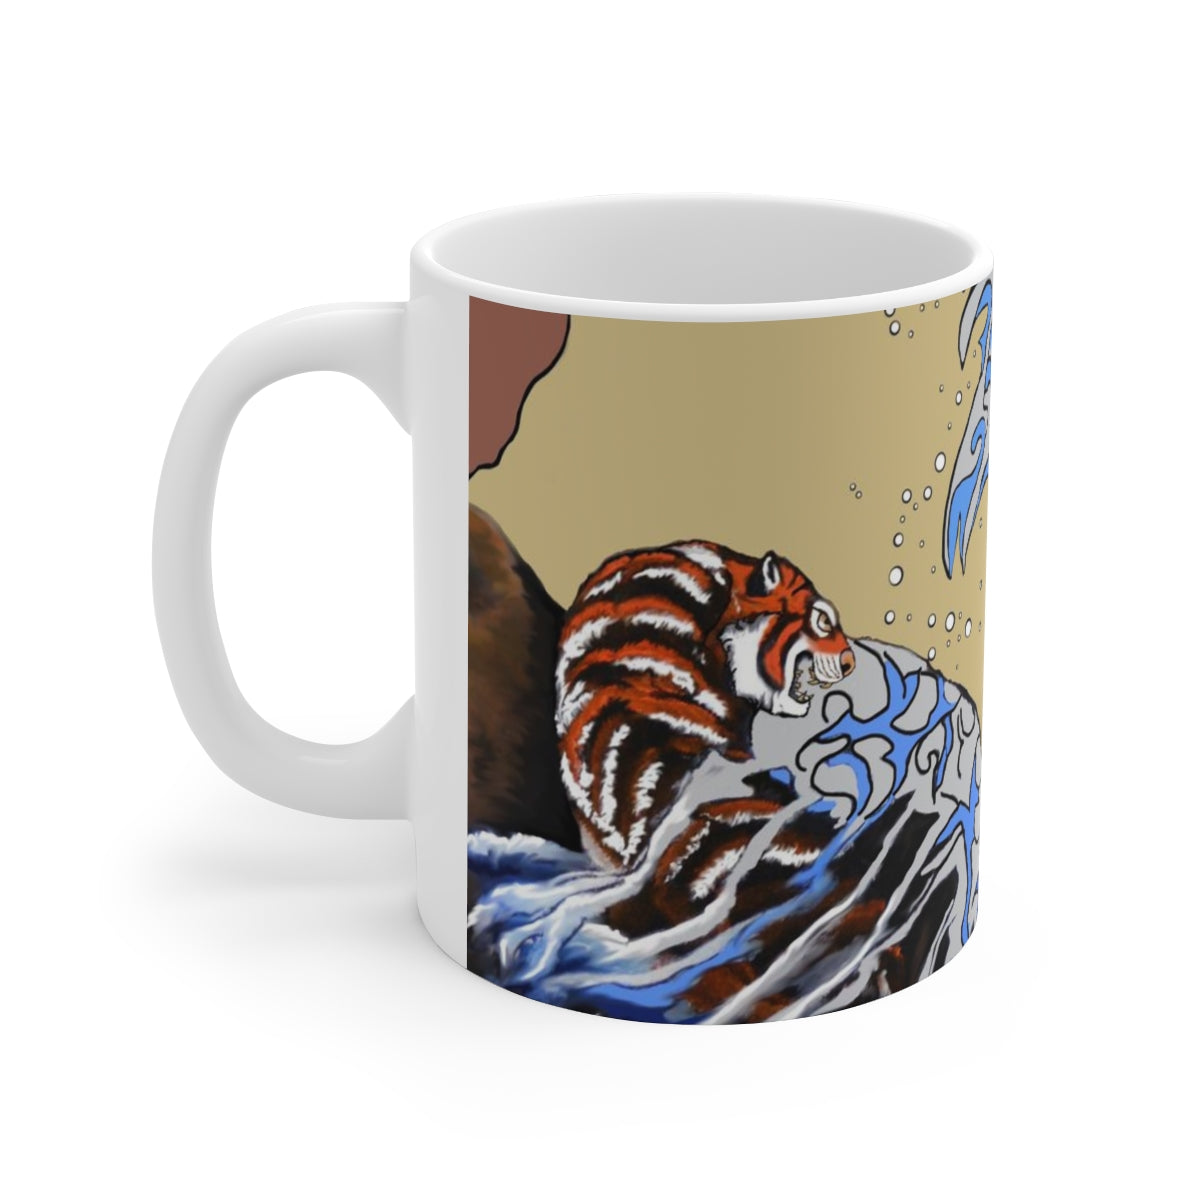 Earth & Sea Battle Ceramic Mug